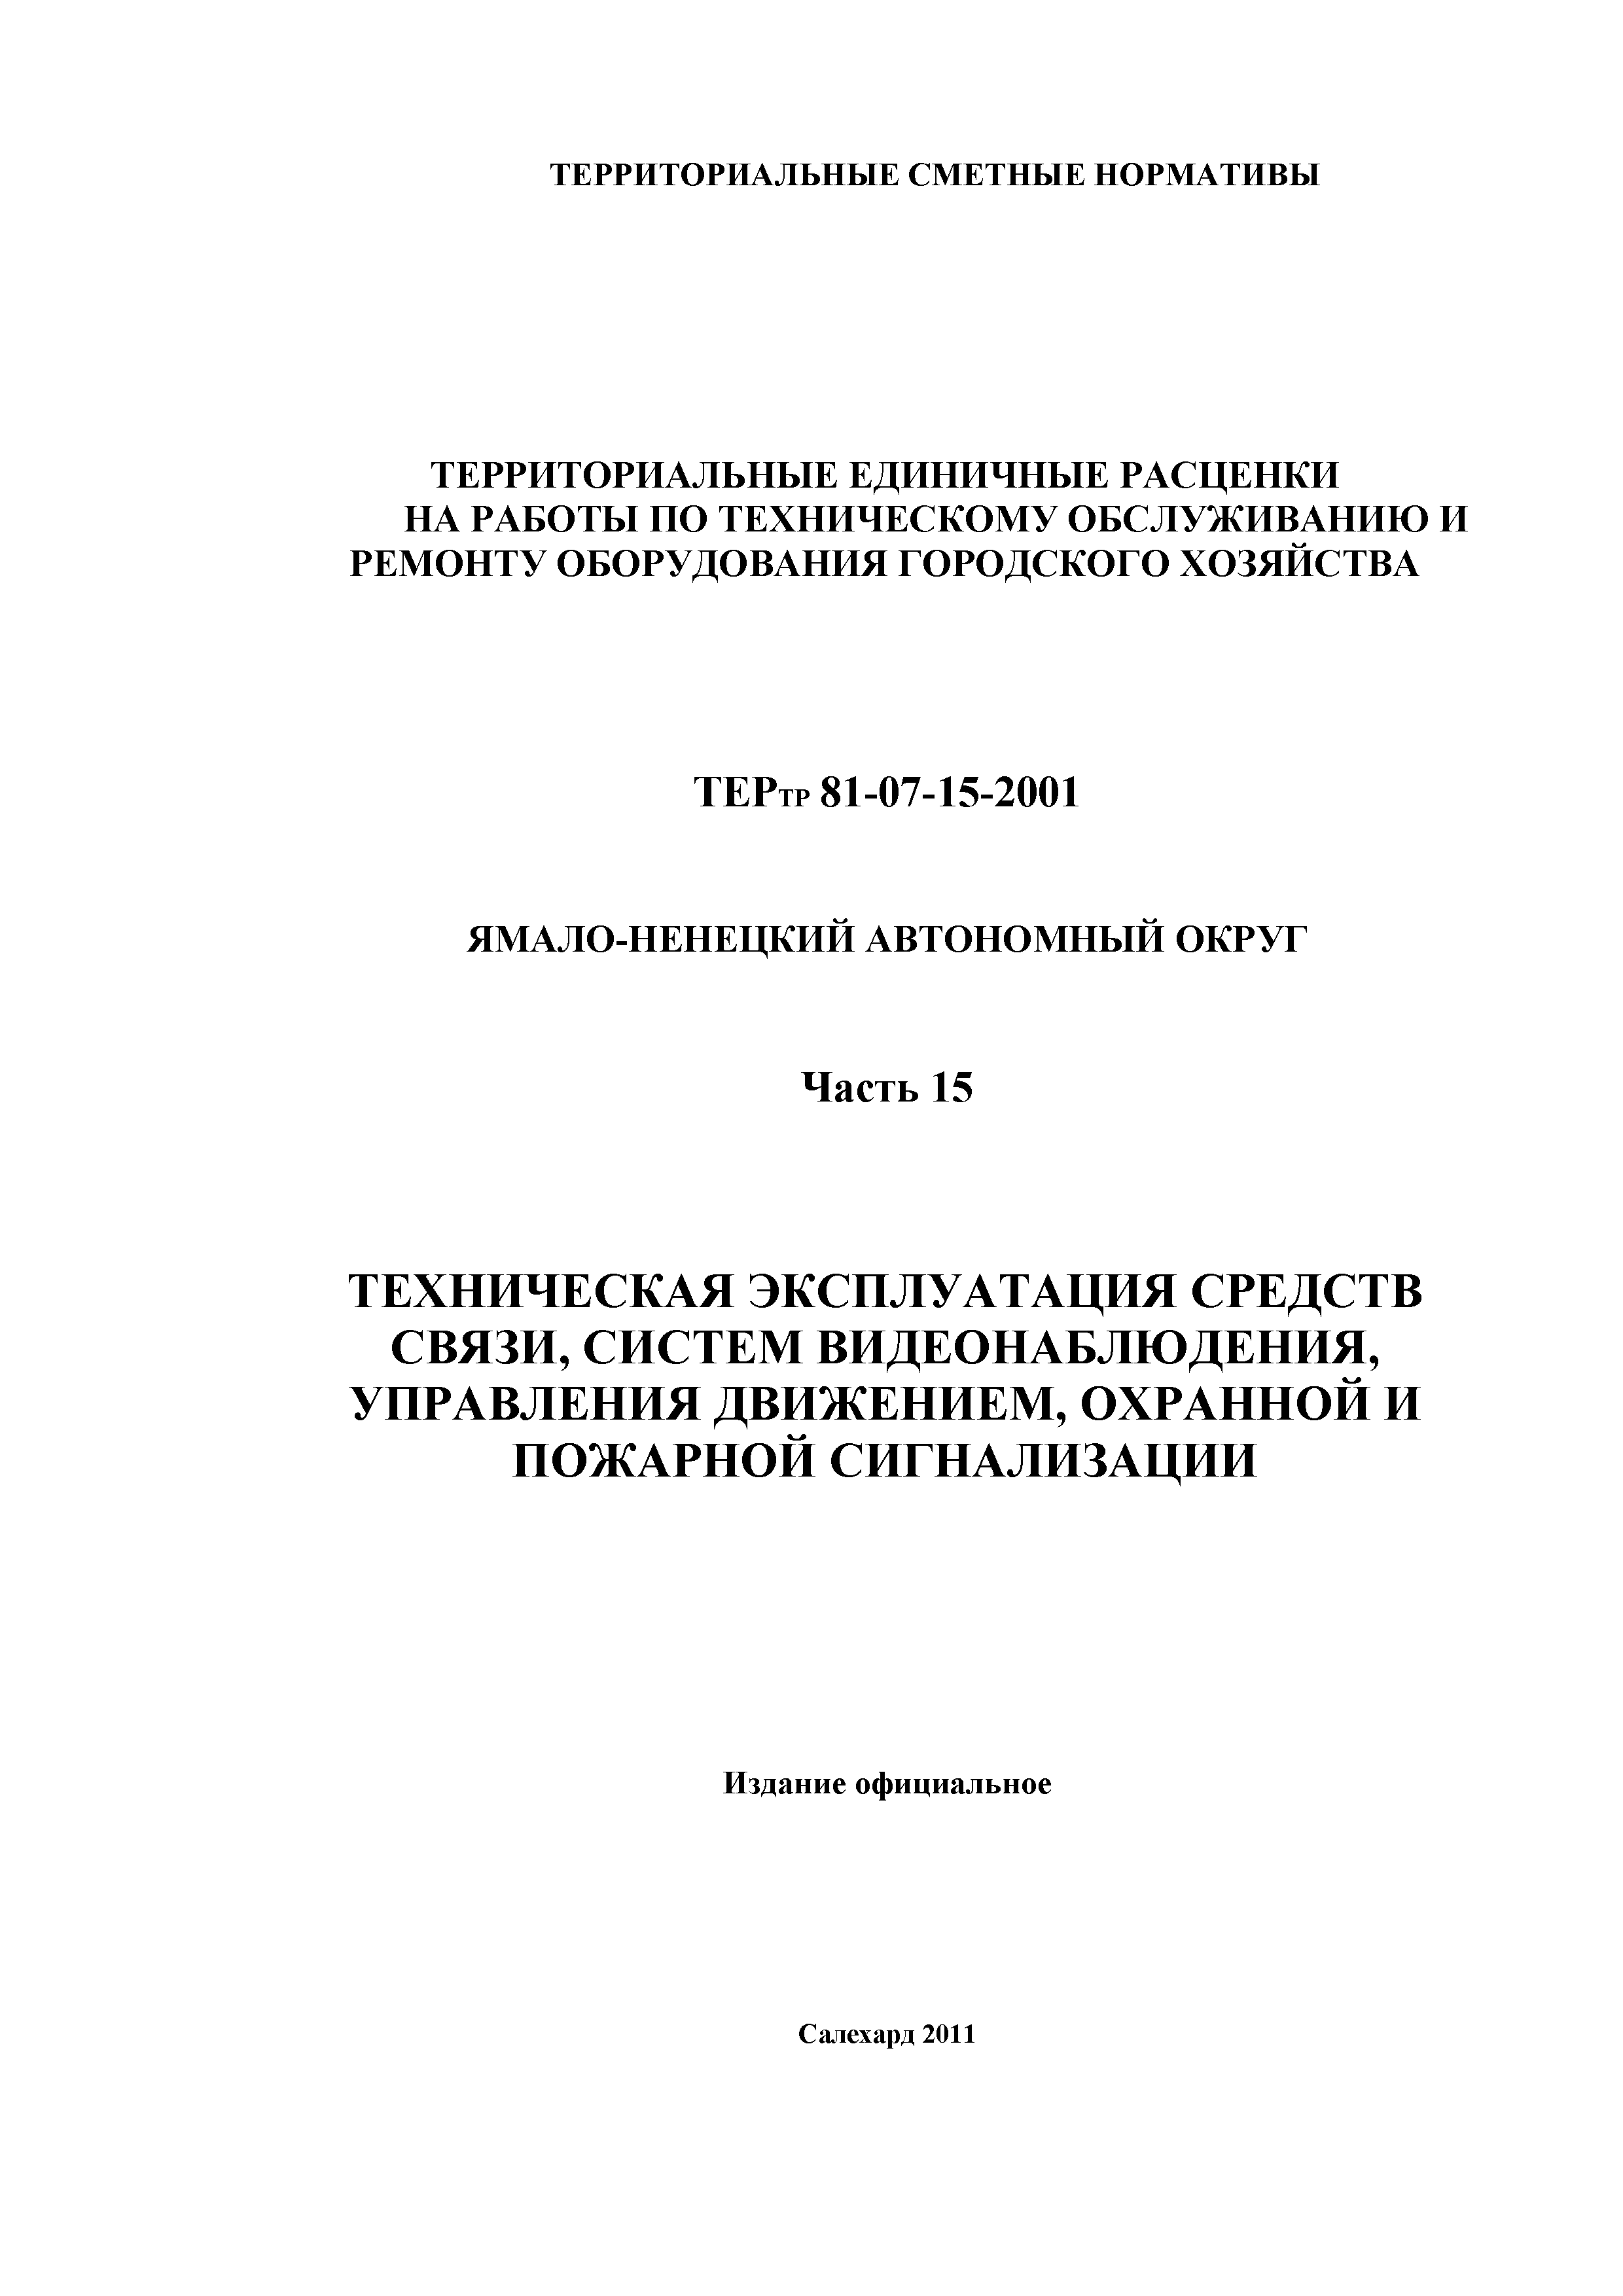 ТЕРтр Ямало-Ненецкий автономный округ 15-2001